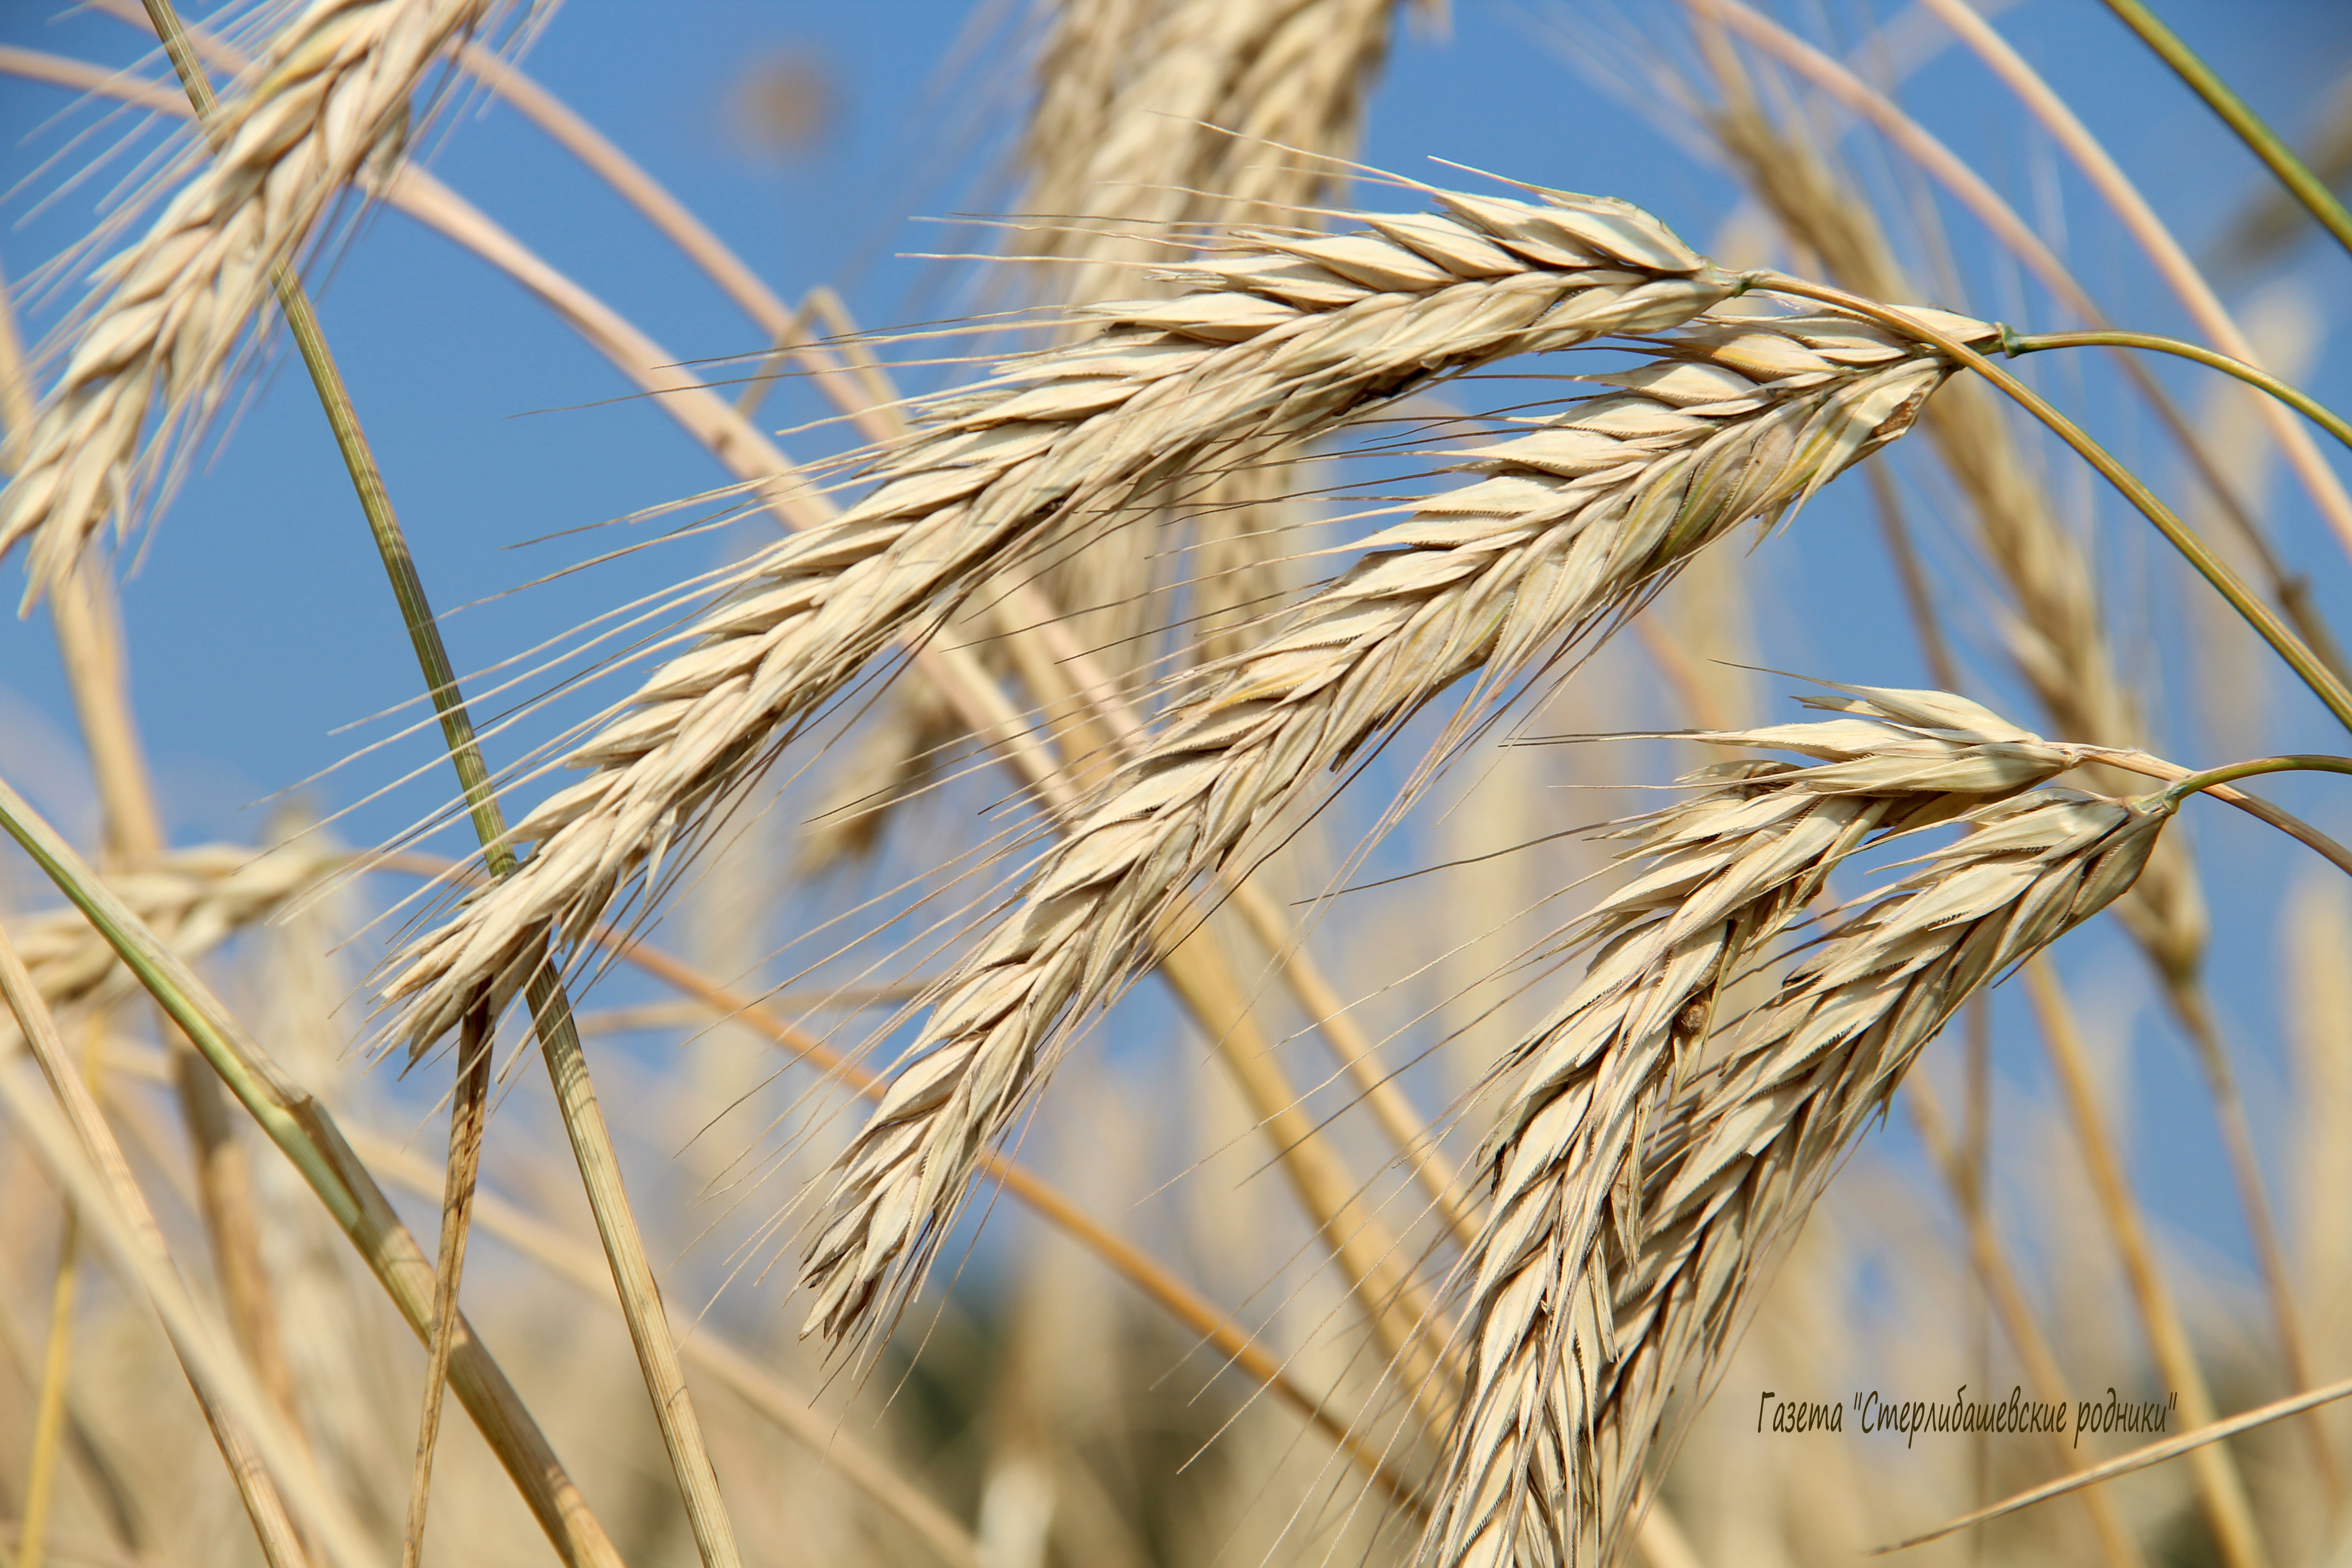 За два года производители зерна в Башкирии получат 1,15 млрд рублей федеральных субсидий